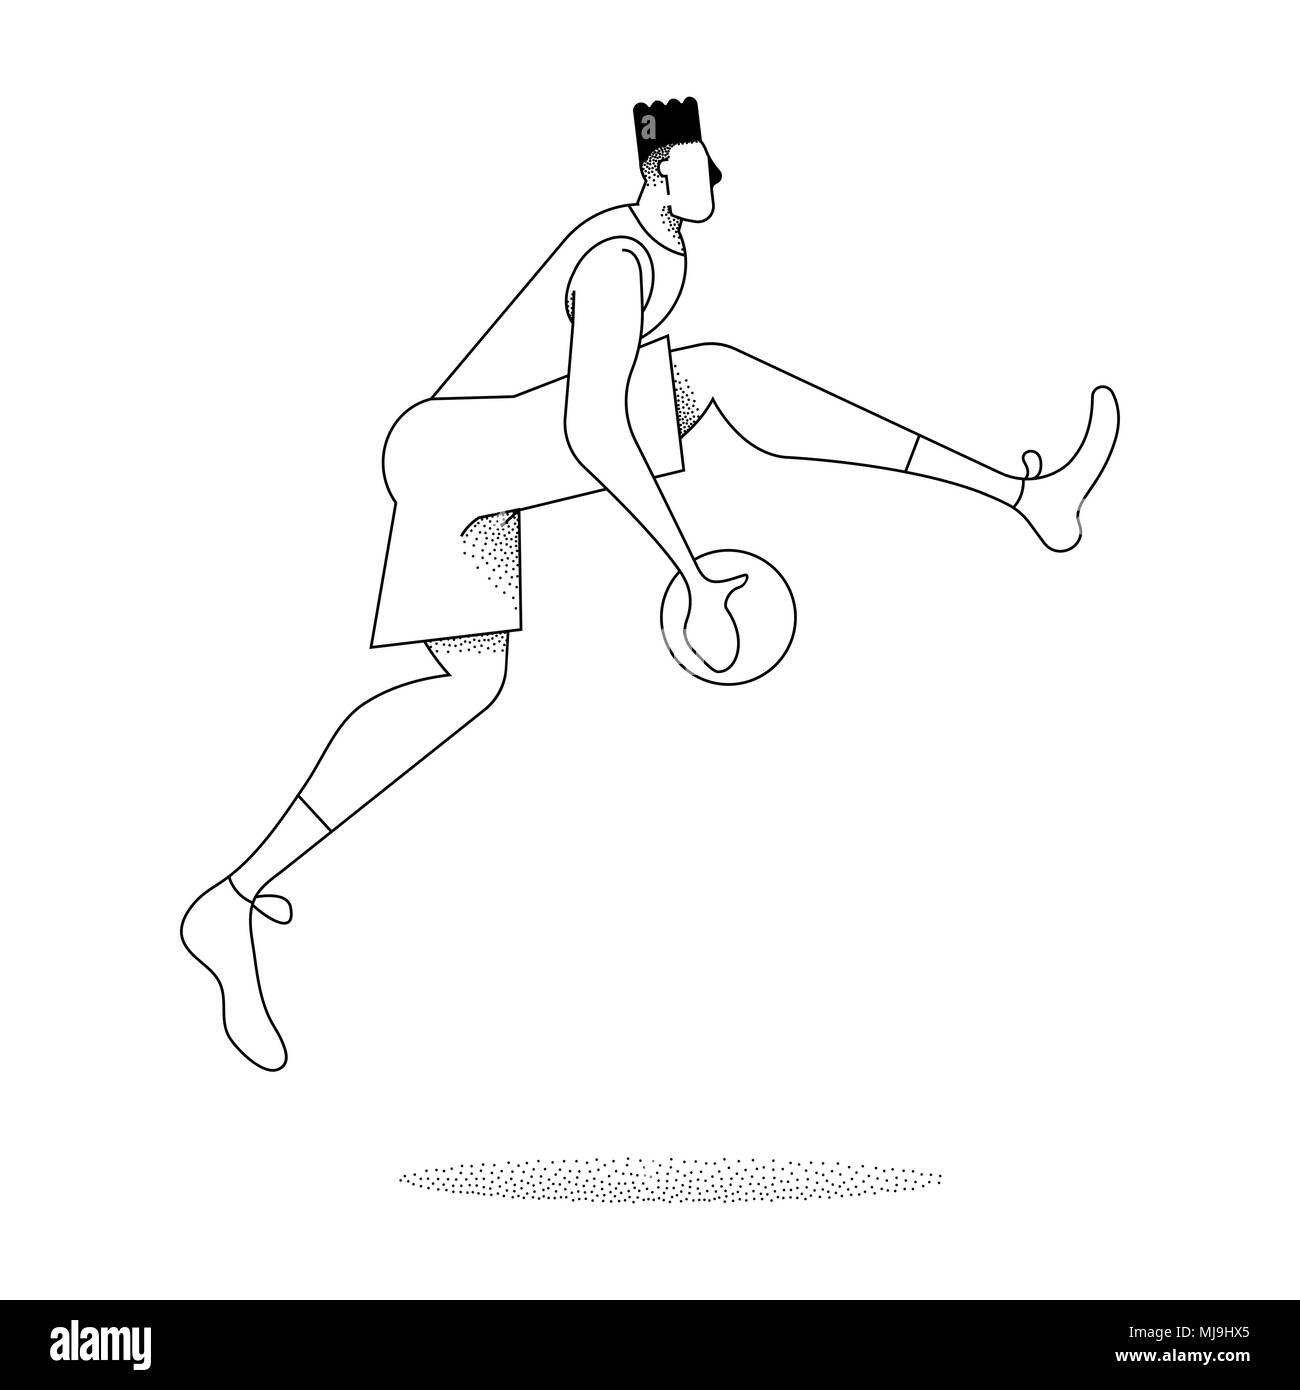 L'uomo giocando a basket ball, moderno in bianco e nero in stile contorno. Il basket jump pongono in azione su sfondo isolato. EPS10 vettore. Illustrazione Vettoriale